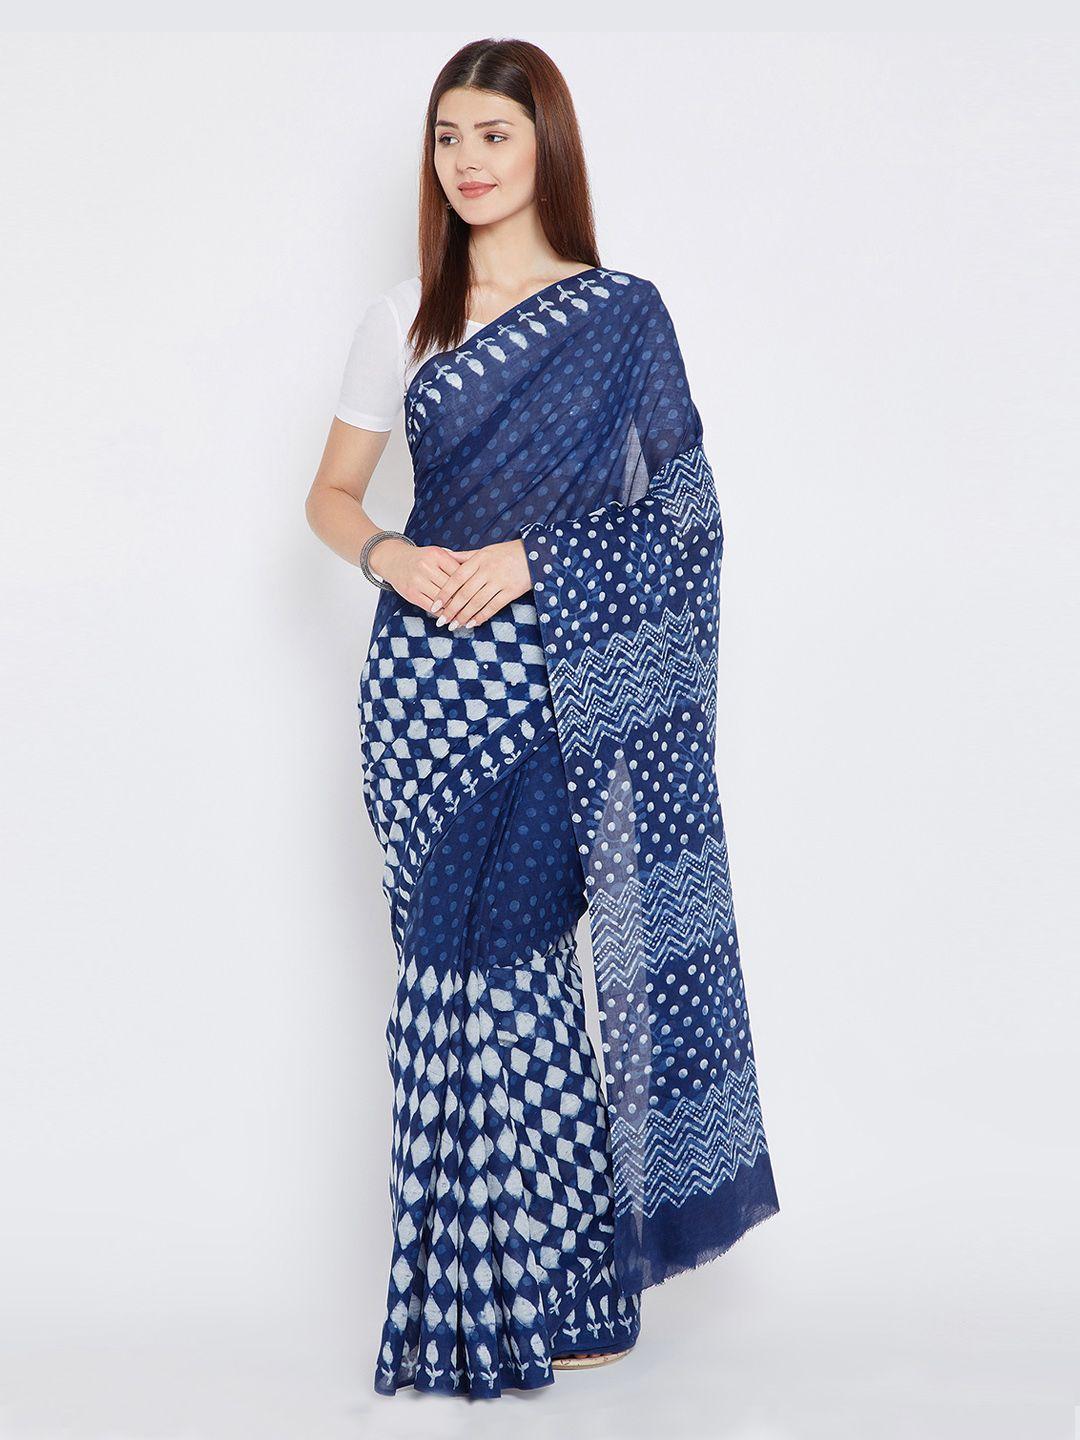 kalakari india blue & white pure cotton printed saree